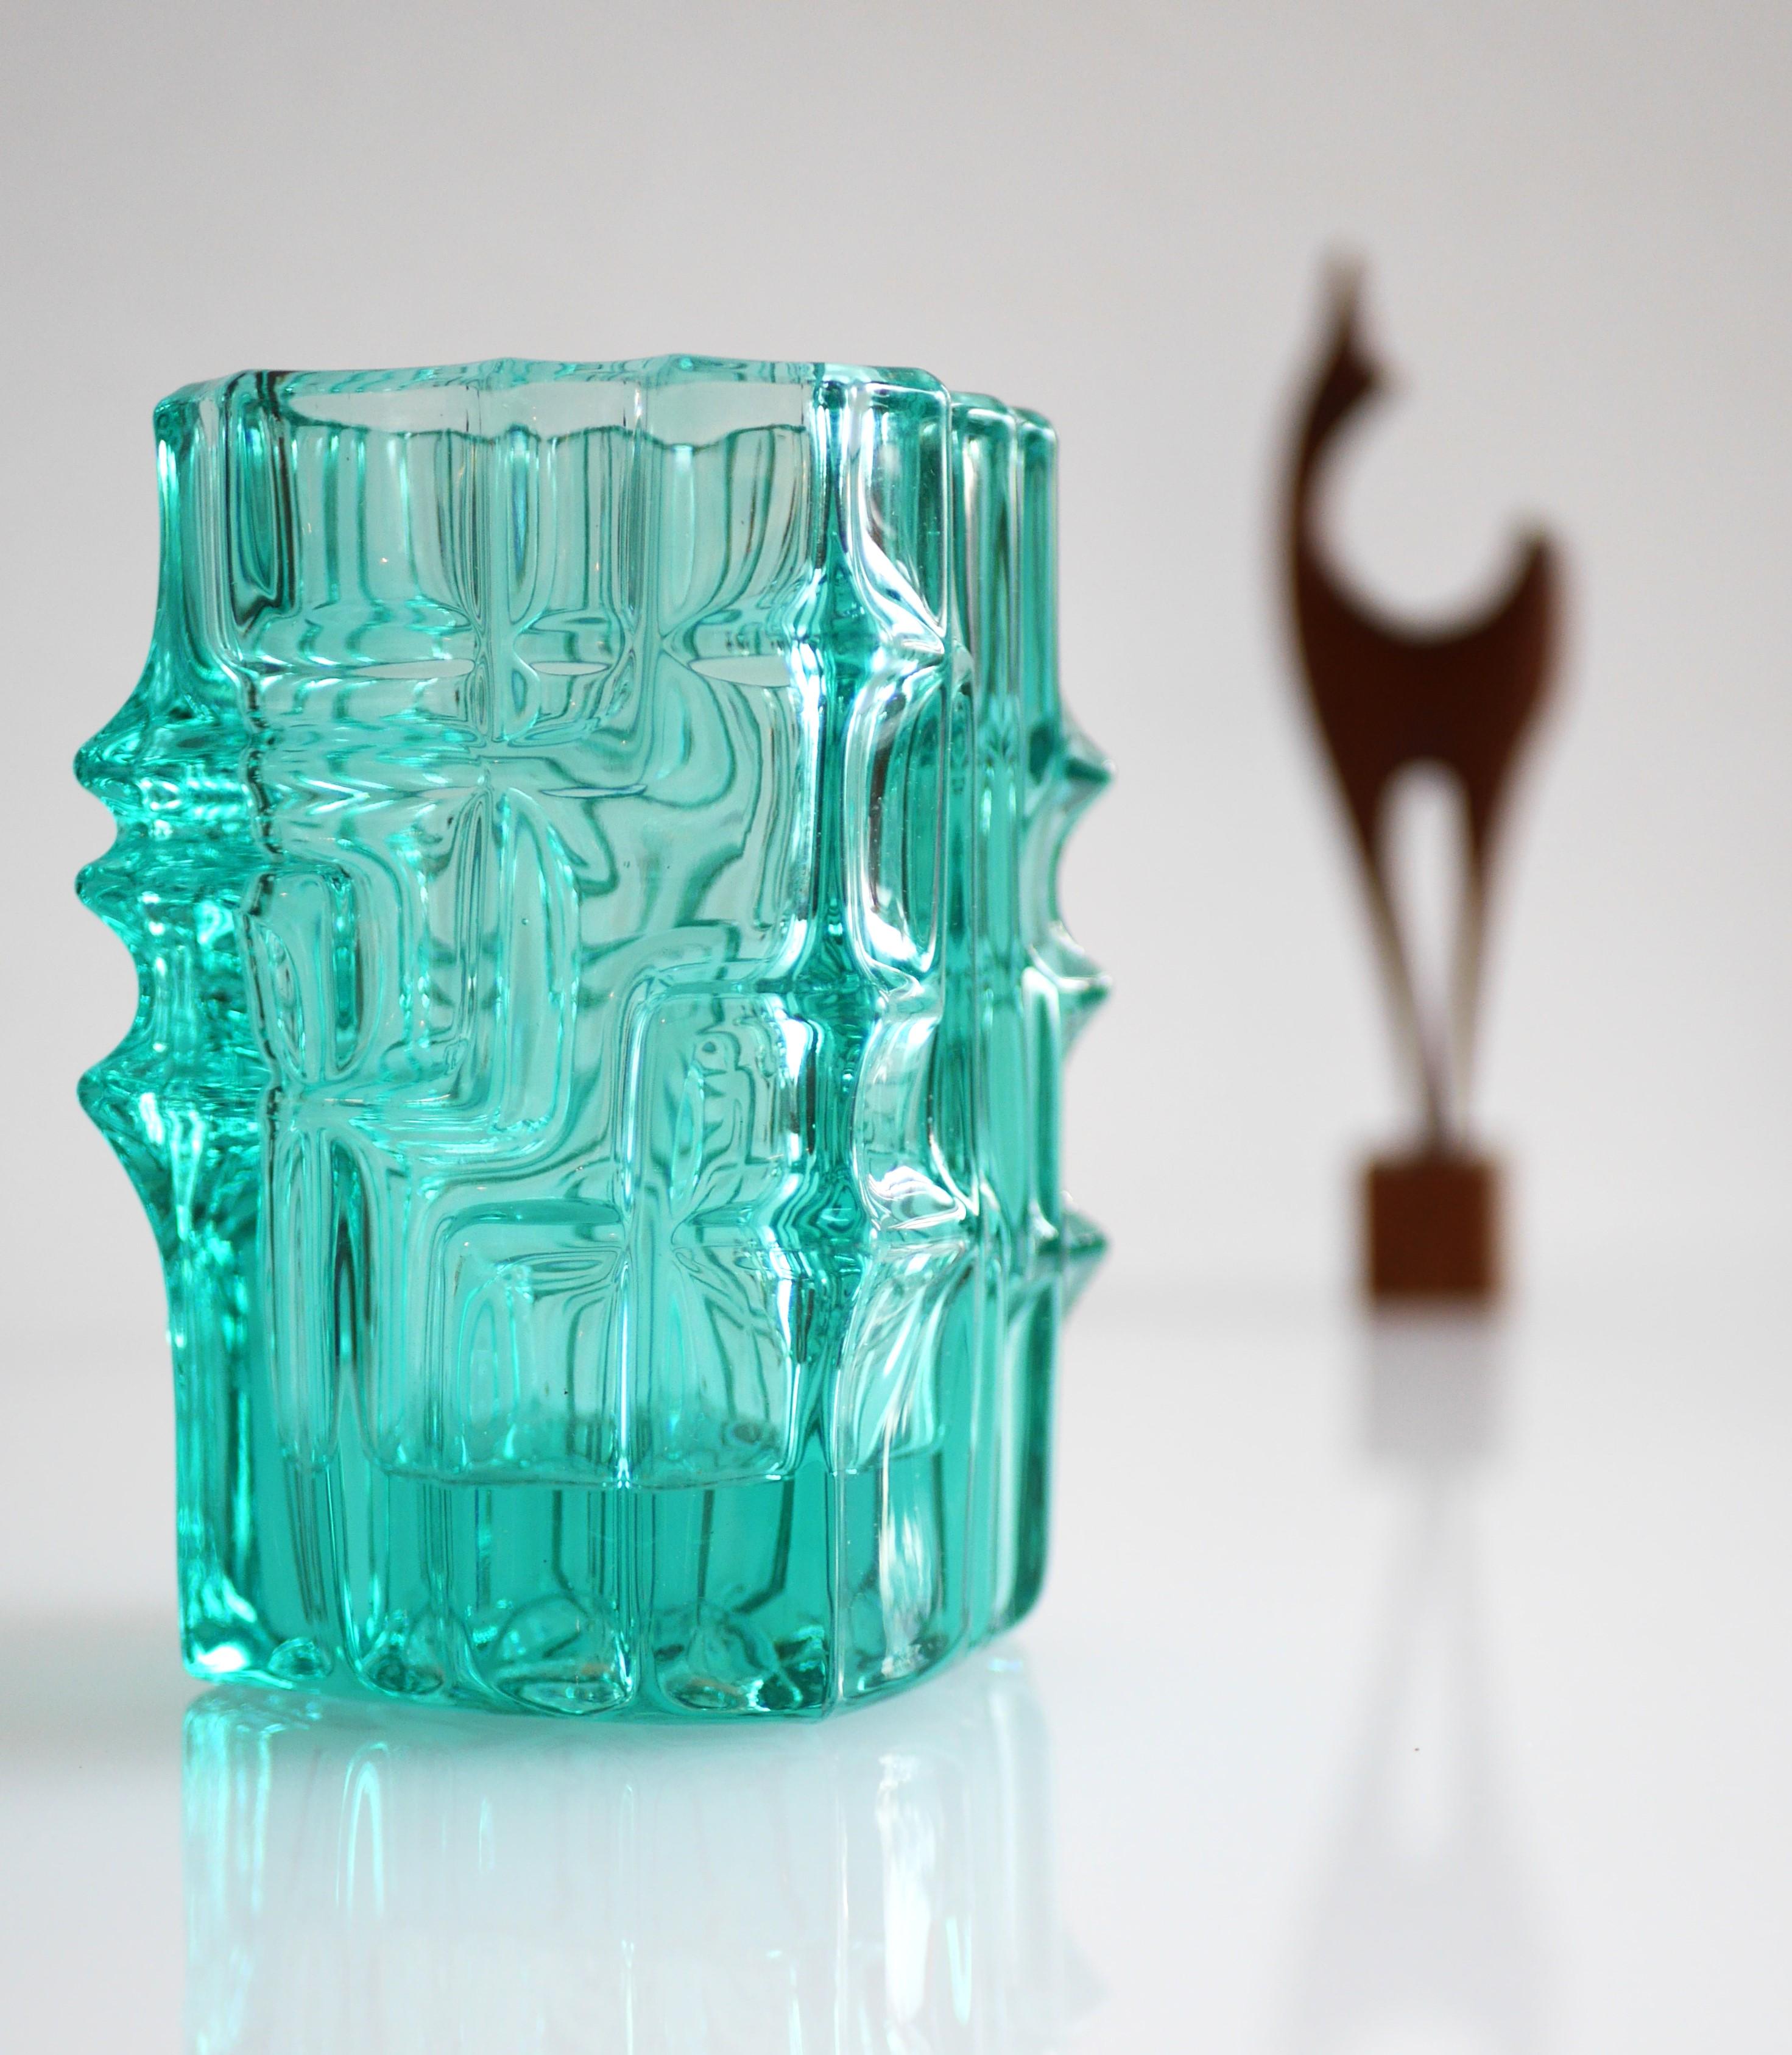 Voici un étonnant vase en verre avec un fantastique ton turquoise pâle, par Vladislav Urban pour Rocie works, SkLO UNION , 1960s - Mid Century Modern Czech glass. Il s'agit d'une pièce rare, qui s'intégrera dans n'importe quel intérieur ! Ce vase